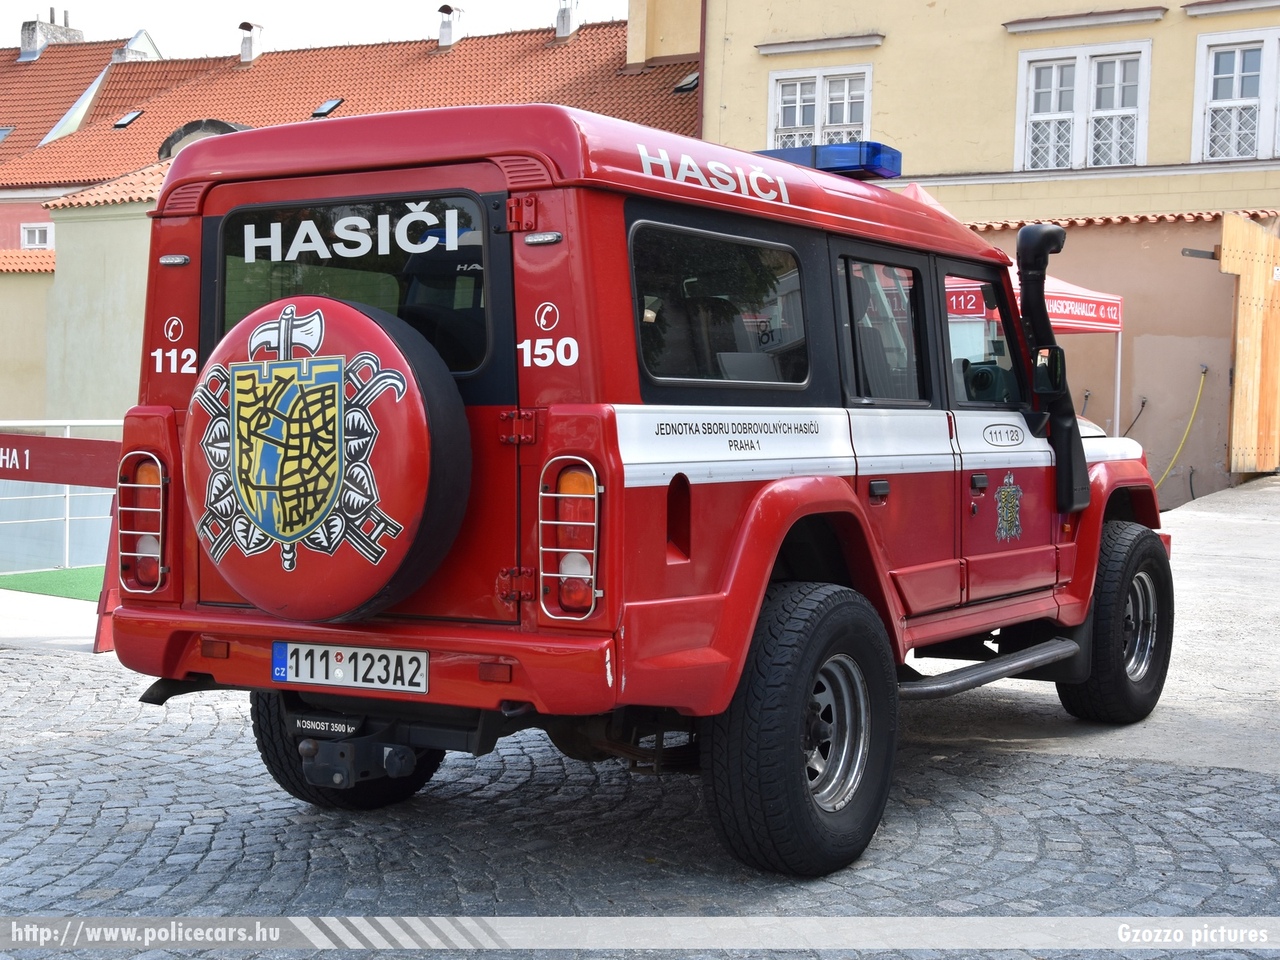 Iveco Massif, Prága, Praha SDH 1, fotó: Gzozzo pictures
Keywords: Czech cseh Csehország fire firetruck tûzoltó tûzoltóautó tûzoltóság